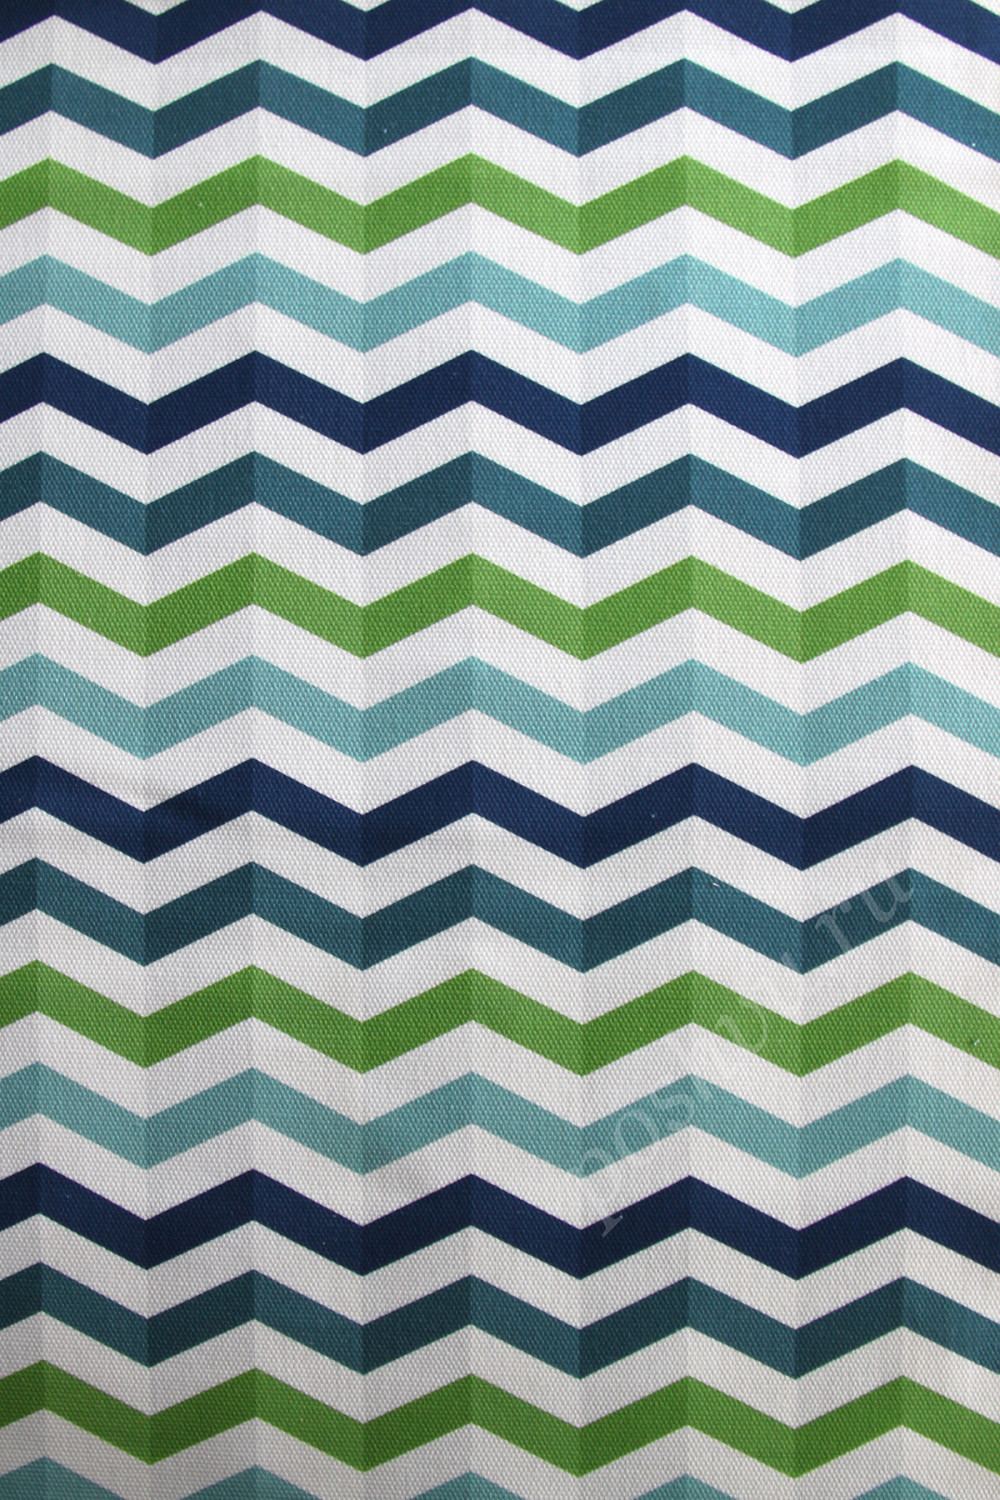 Портьерная ткань рогожка SYMMETRIC геометрический узор зеленые, синие, белые волнистые полосы